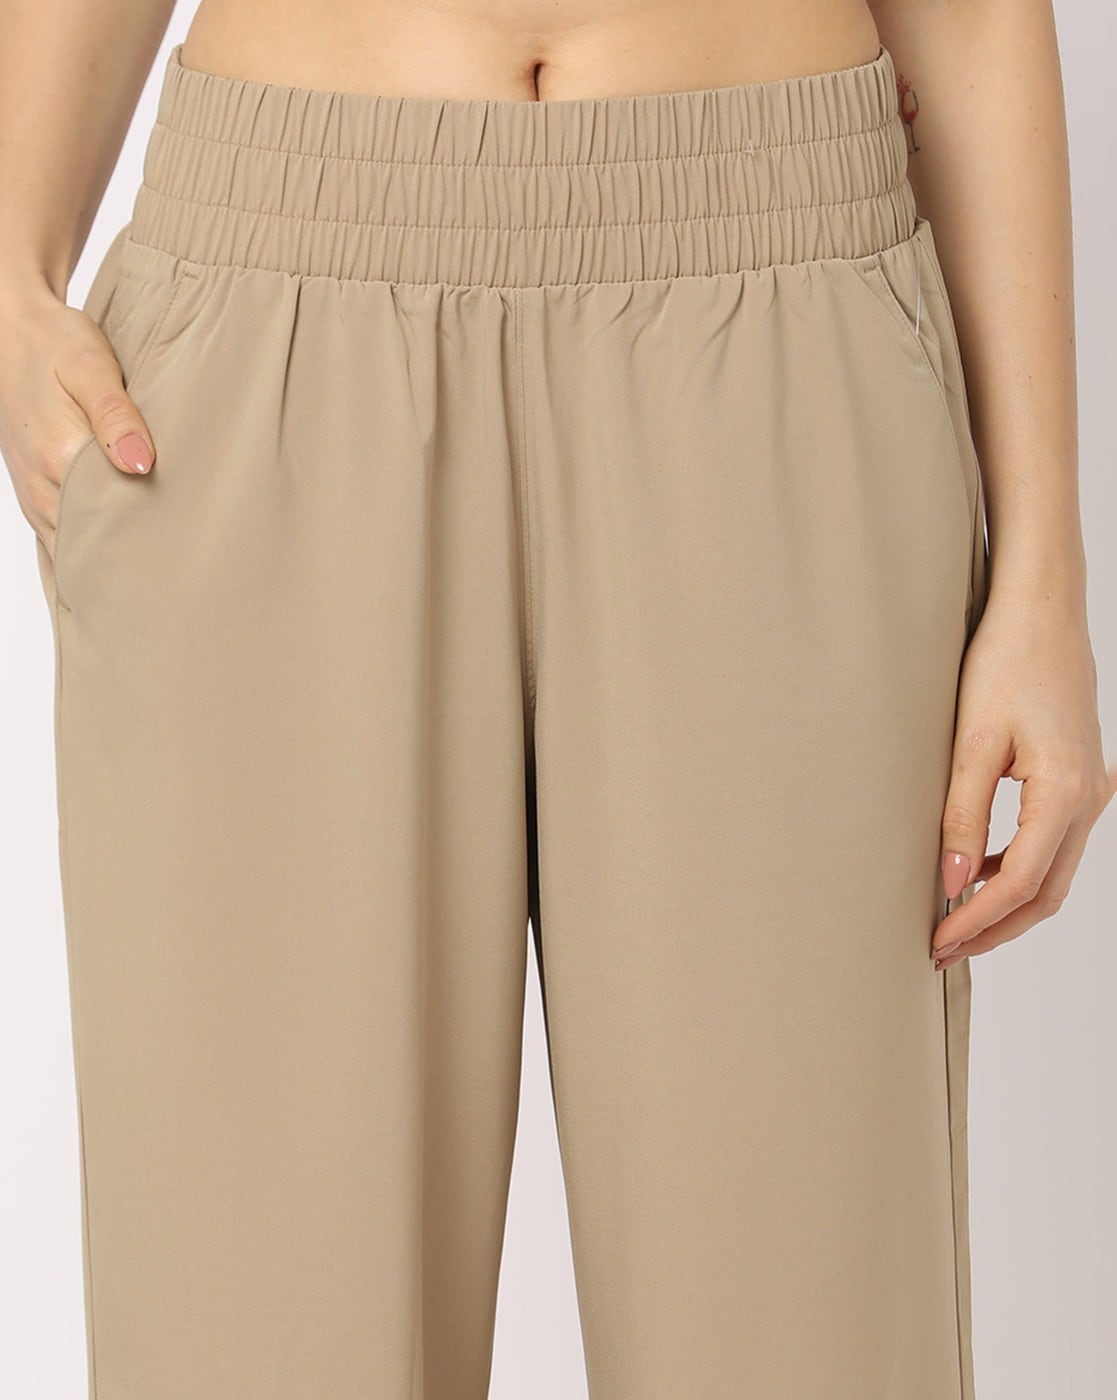 Gap Women Trouser  Buy Gap Women Trouser online in India